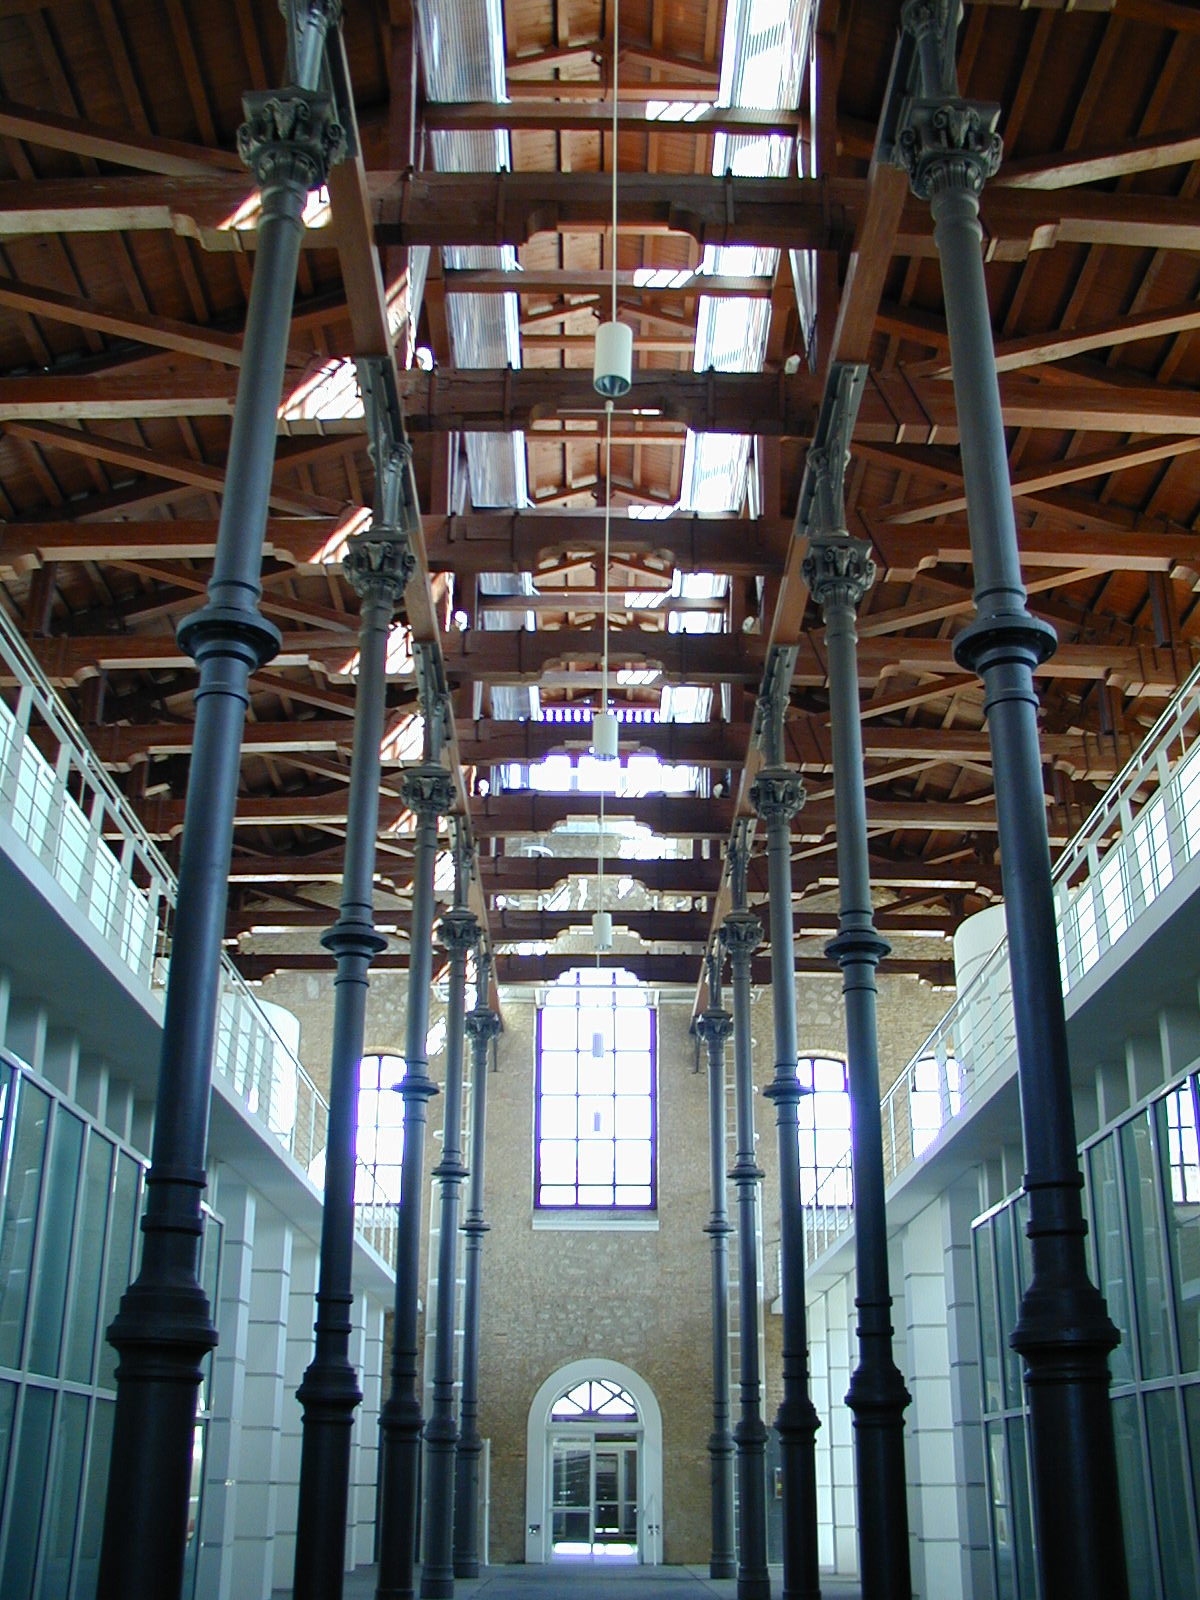 Nave central del Centro de Artesanía de Aragón con perspectiva de las columnas y el artesonado del techo